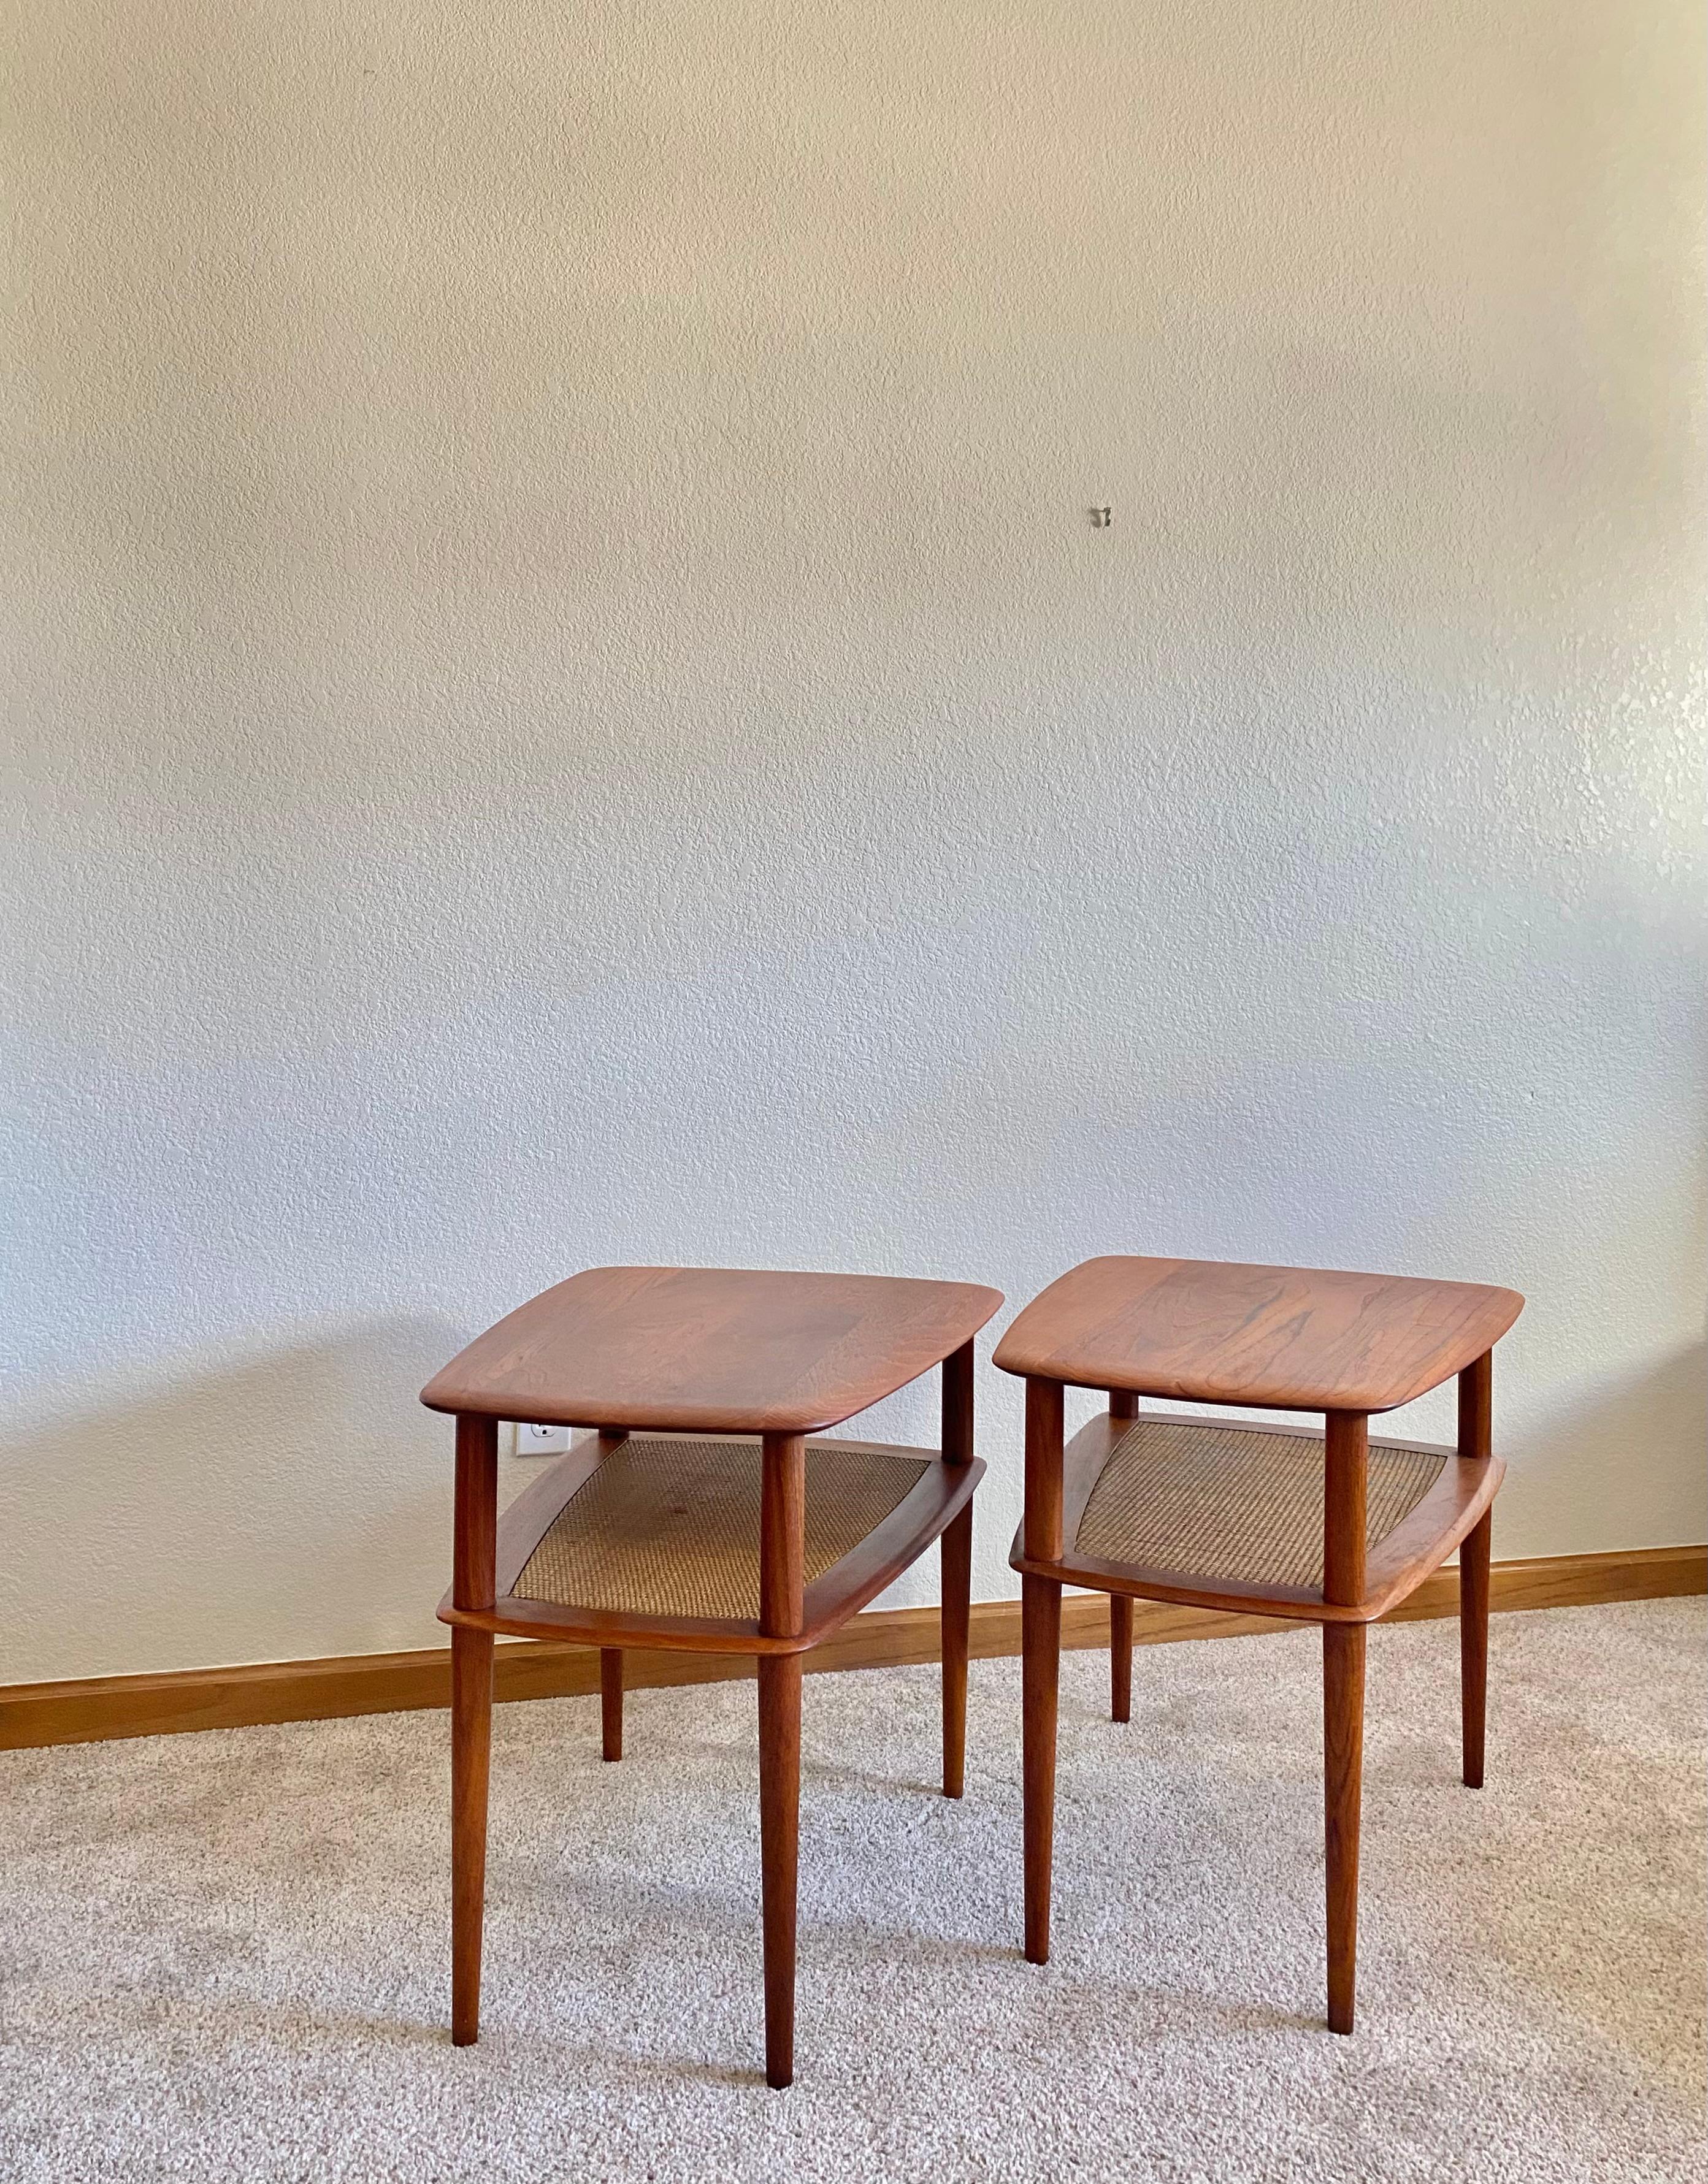 Pair of Modernist Minimalist Peter Hvidt + Orla Mølgaard Teak Caned Side Tables For Sale 1